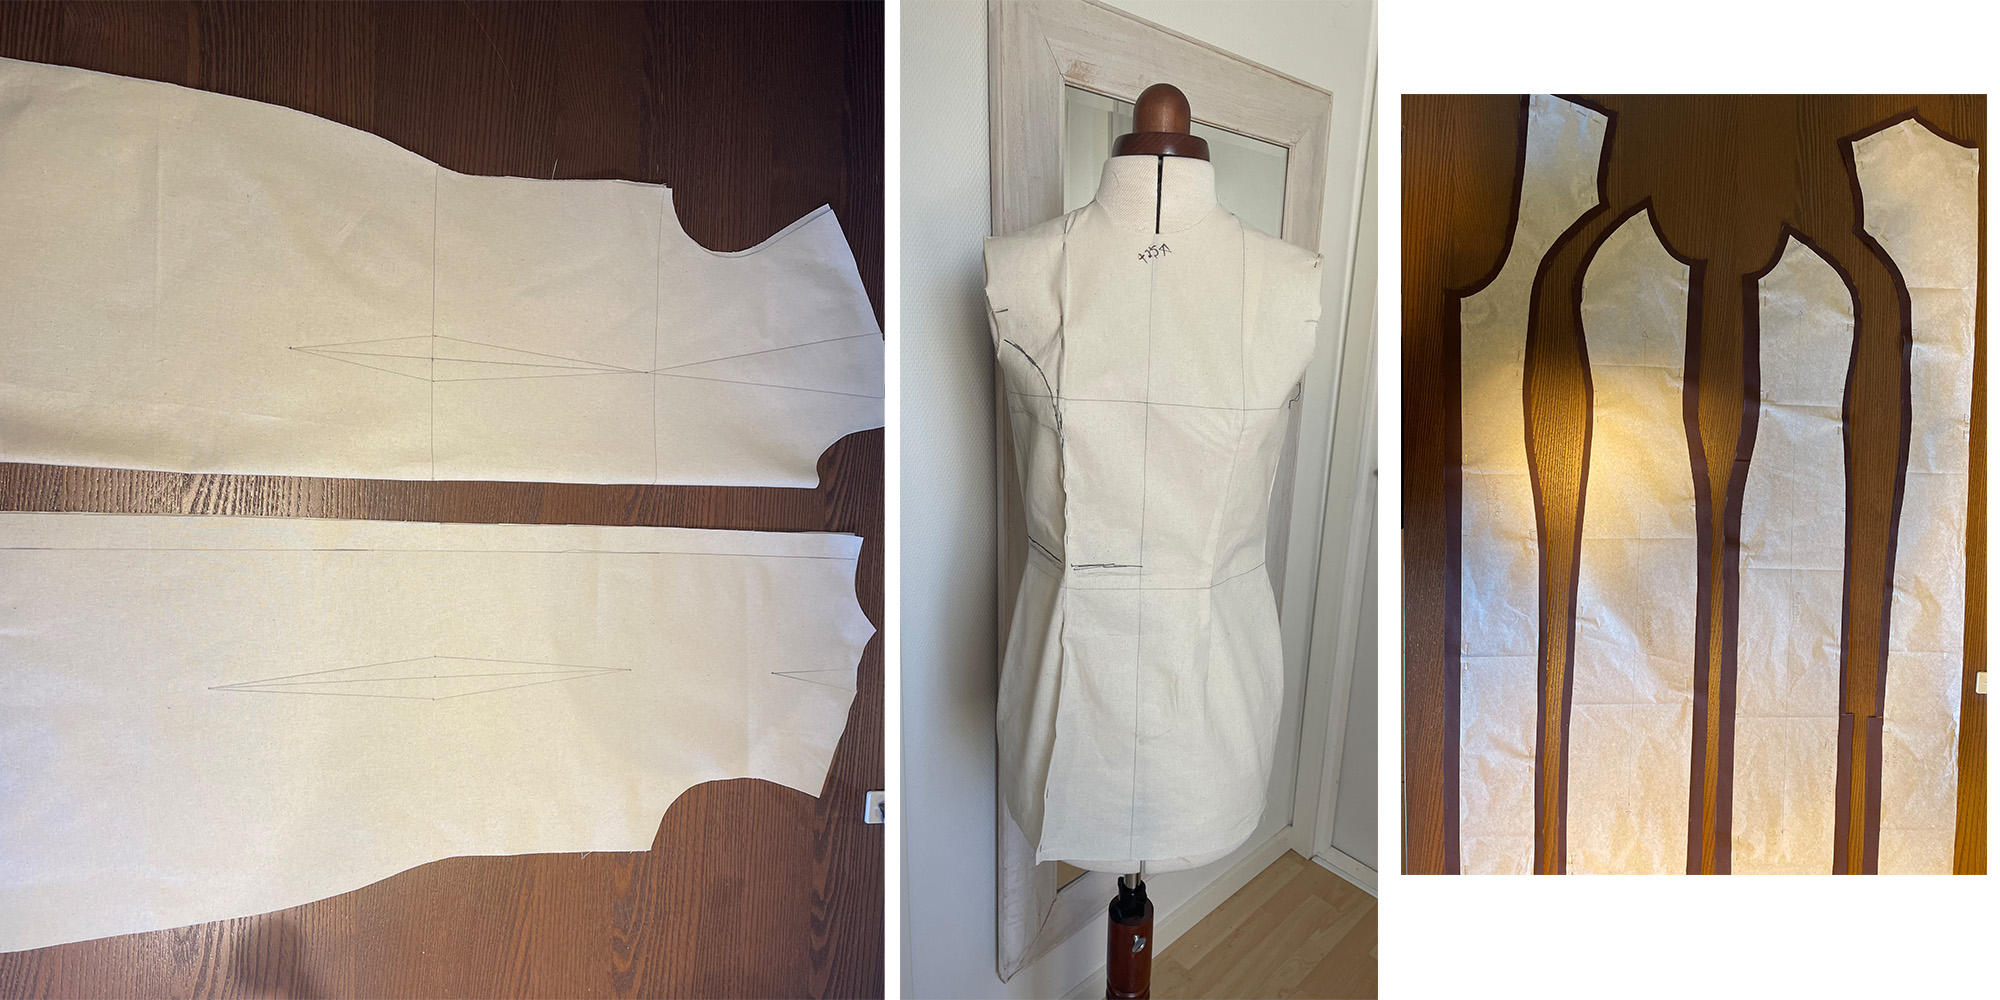 mønster til kjole hjemmesyet - sykursus med Sif Hvass hos FOF i Randers